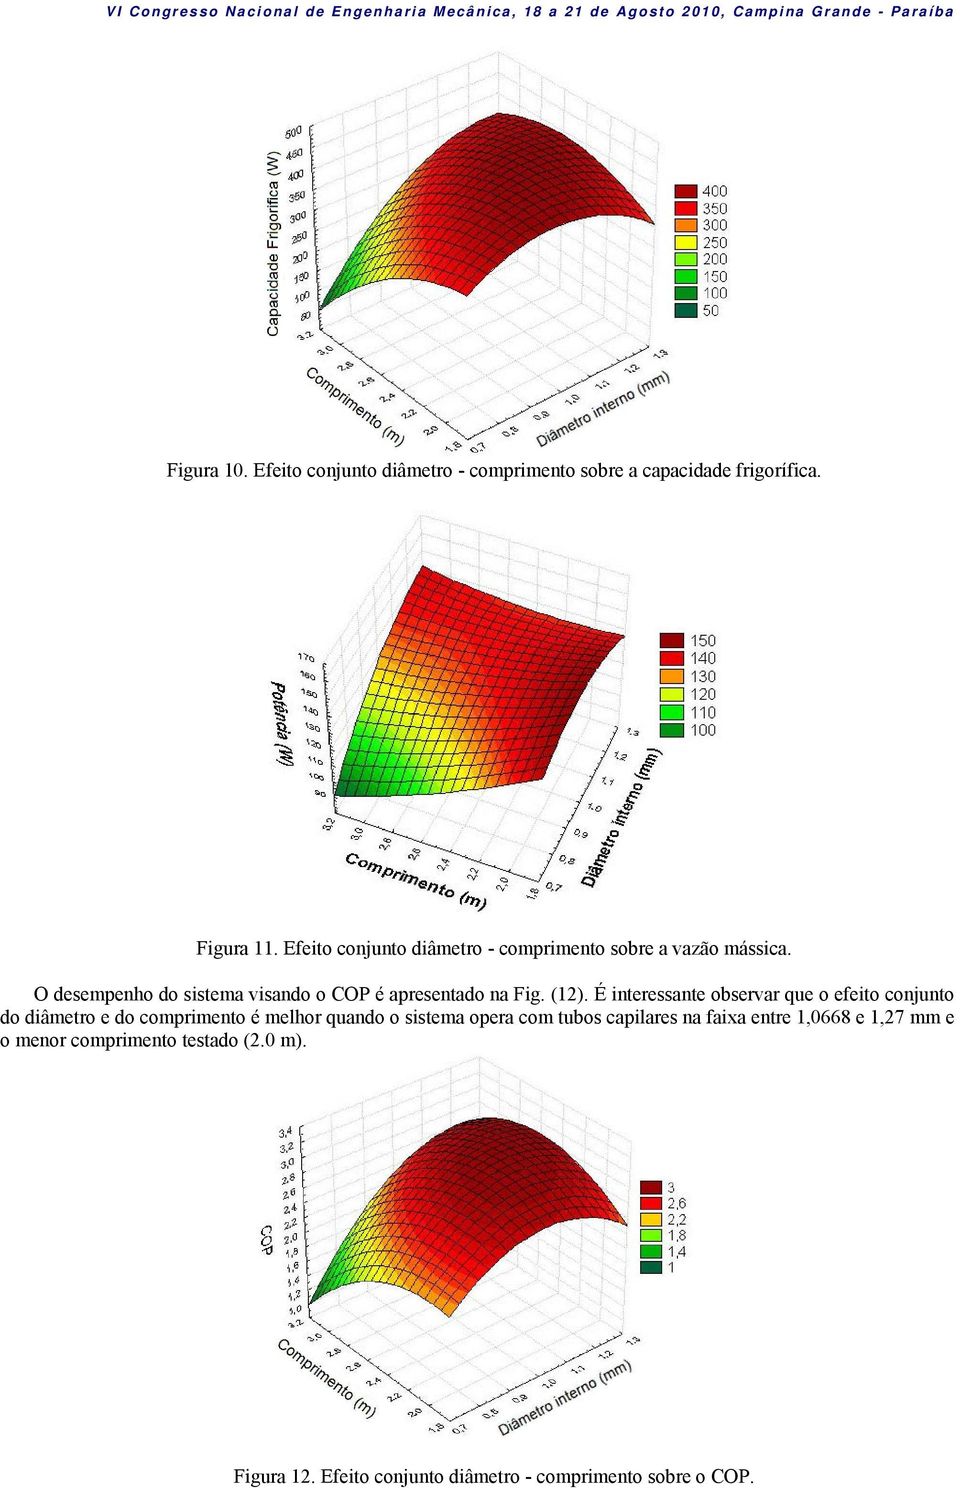 O desempenho do sistema visando o COP é apresentado na Fig. (1).